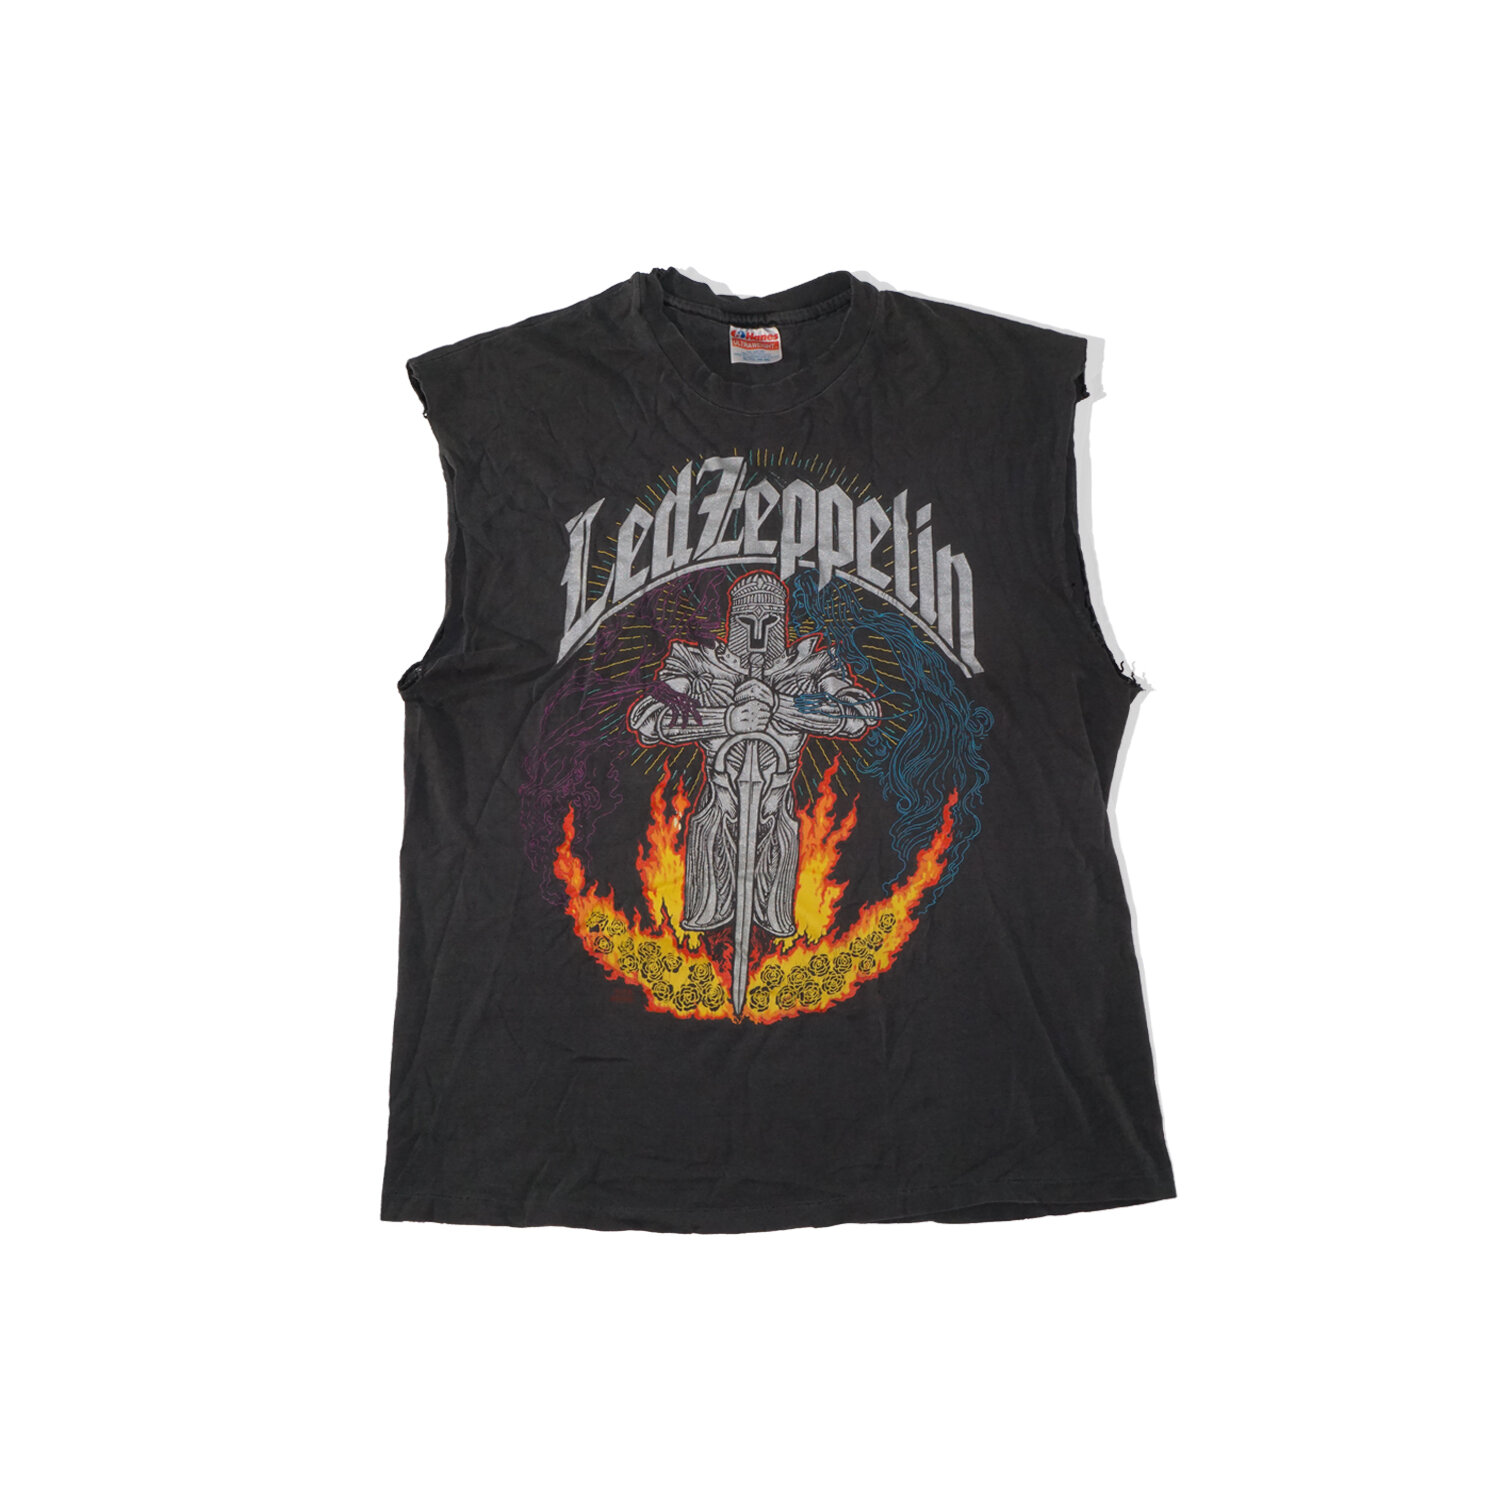 1992 Led Zeppelin Vintage Sleeveless Shirt